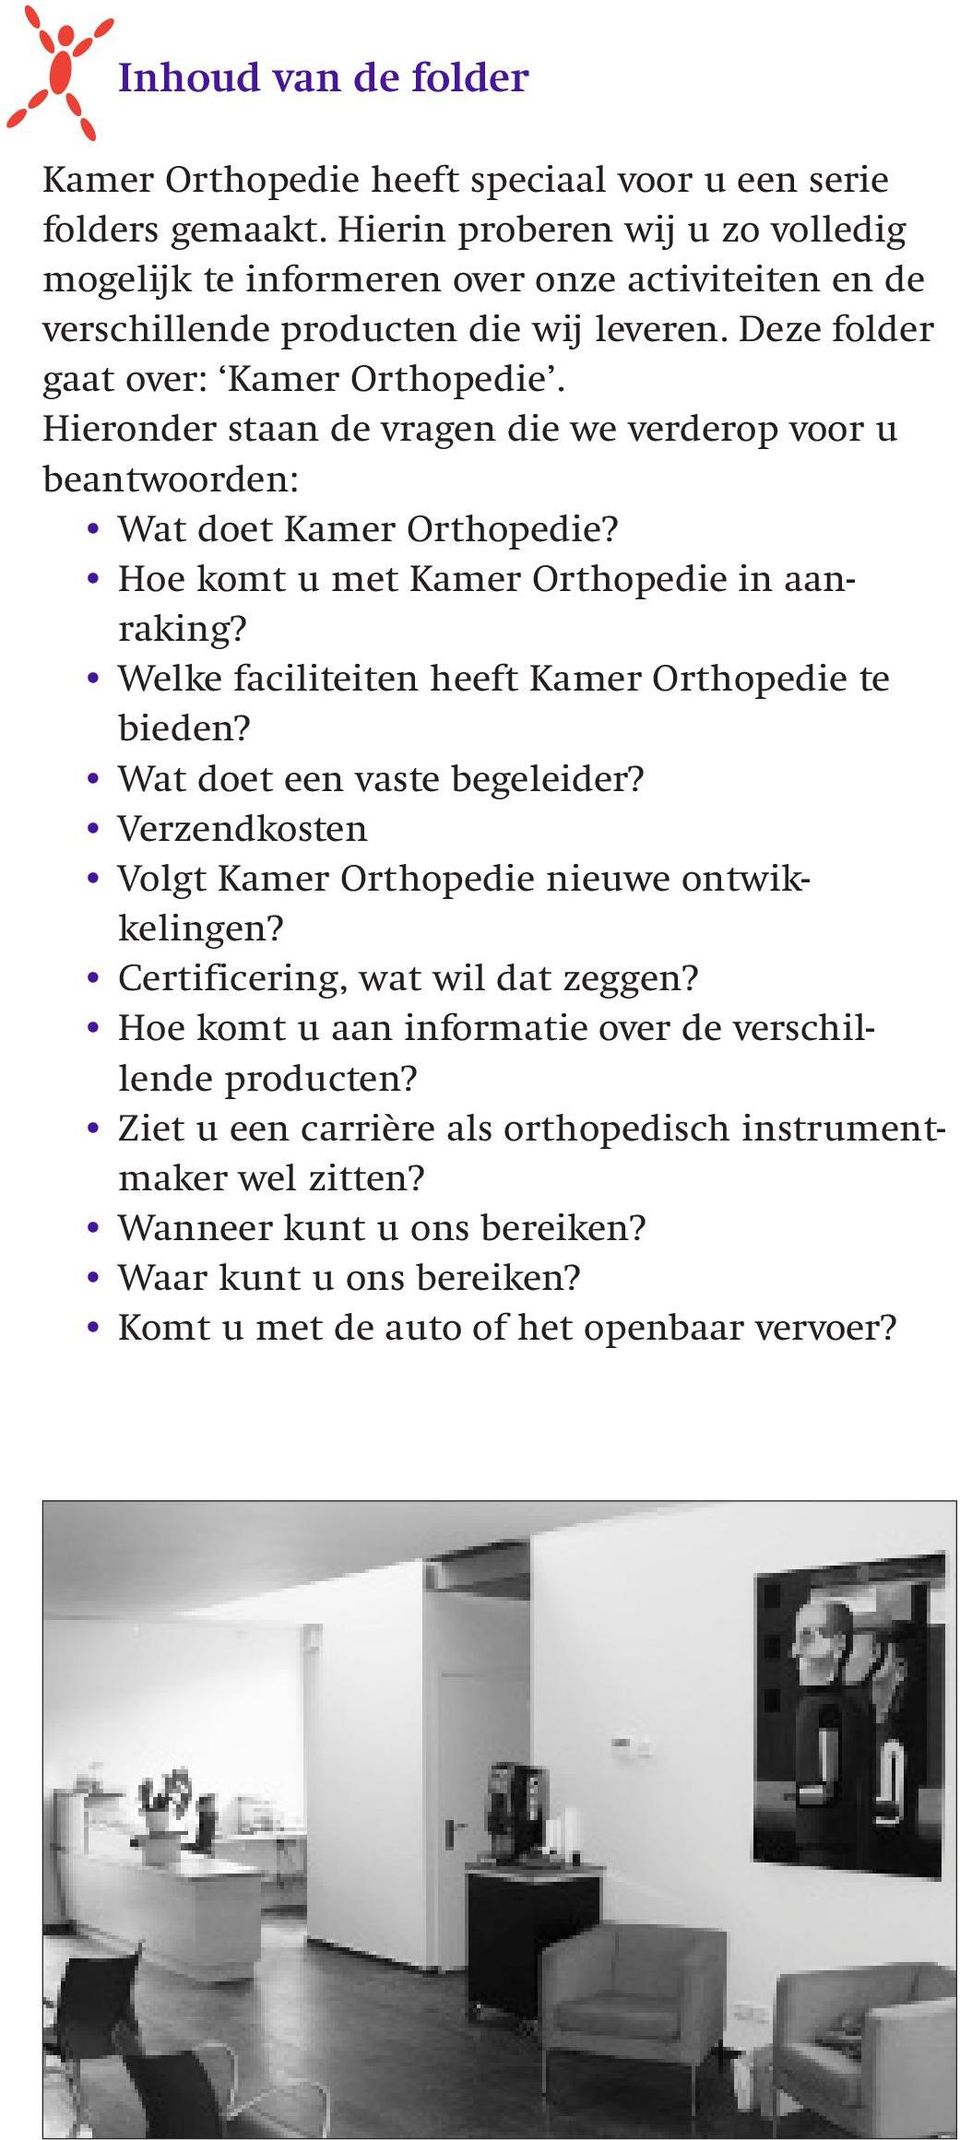 Hieronder staan de vragen die we verderop voor u beantwoorden: Wat doet Kamer Orthopedie? Hoe komt u met Kamer Orthopedie in aanraking? Welke faciliteiten heeft Kamer Orthopedie te bieden?